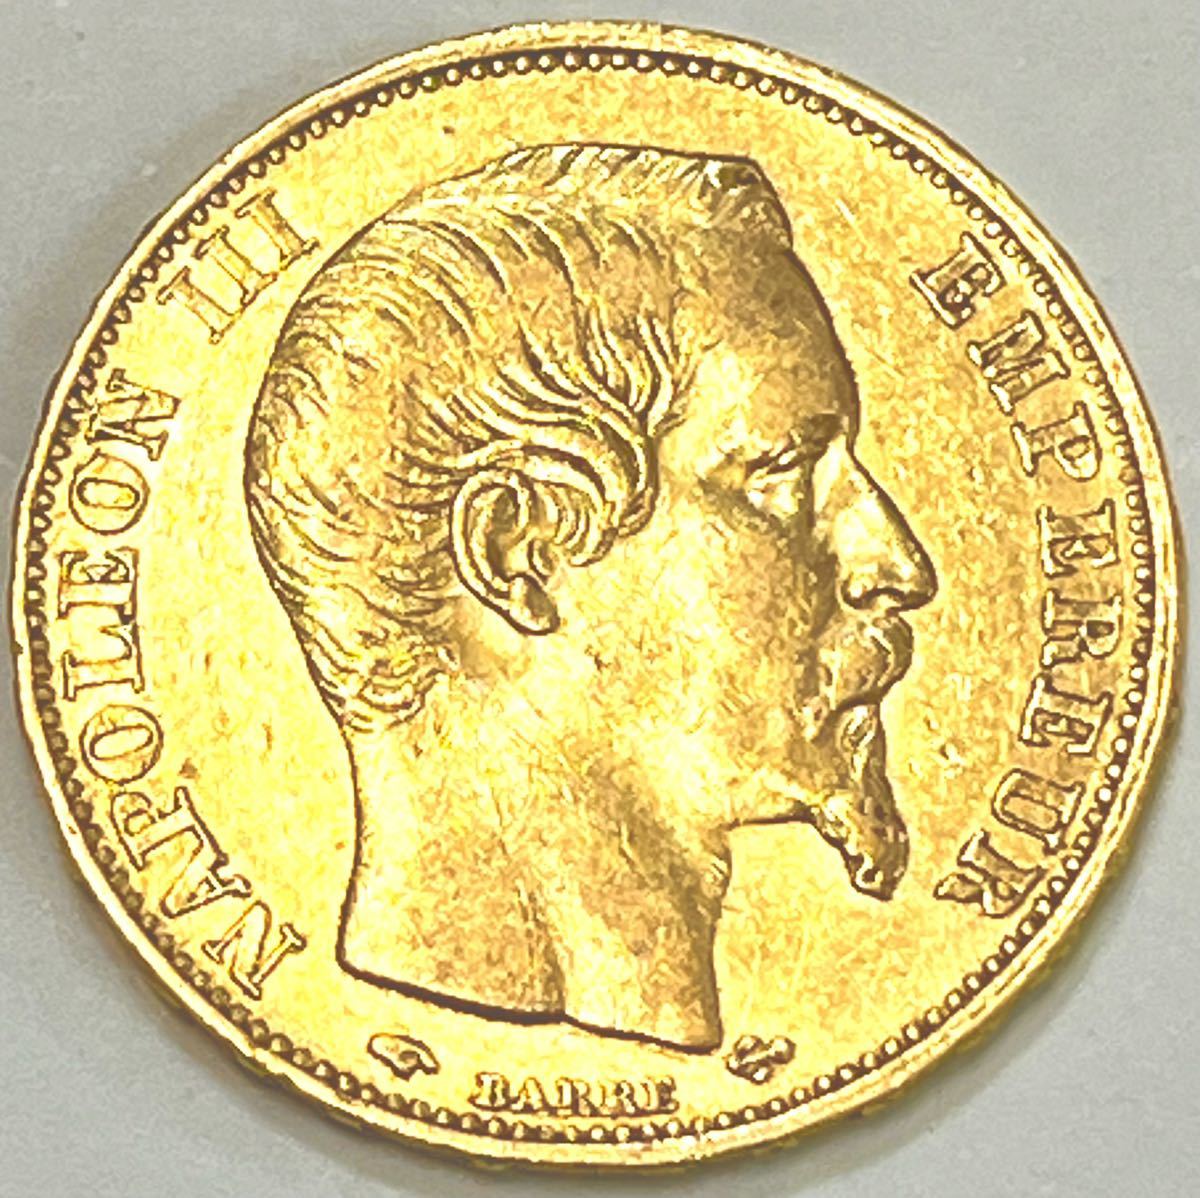 [小さくても大きな現物資産] 初期年号 1856年銘 フランス ナポレオン 20フラン金貨 ミントマークAパリ鋳造 今から約180年前の資産保全金貨